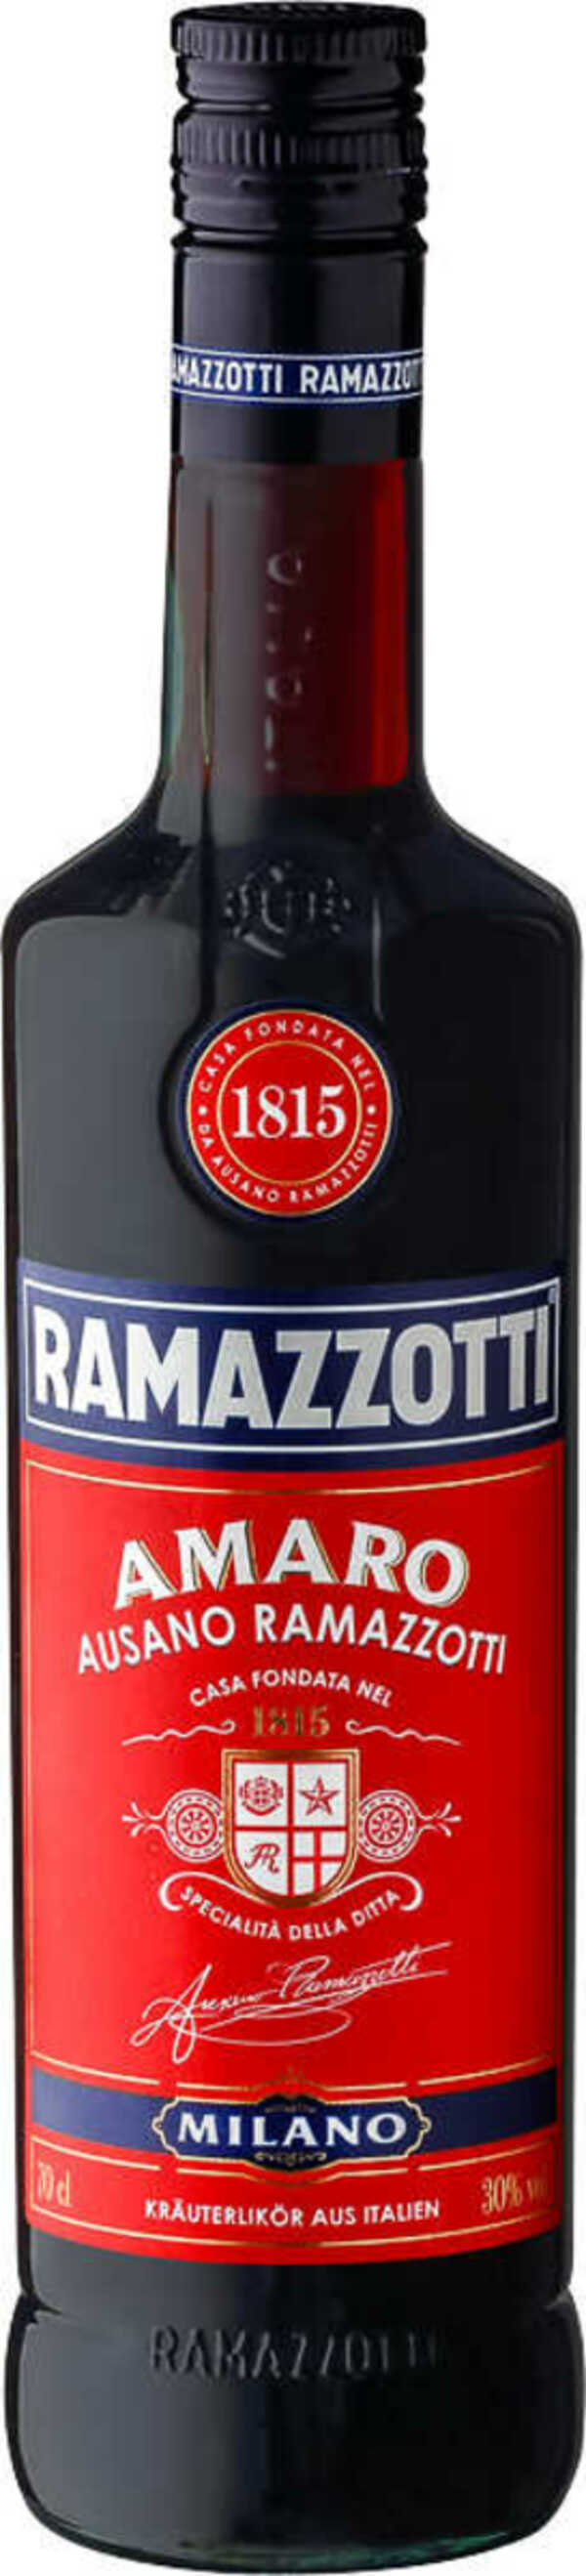 Bild 1 von RAMAZZOTTI Amaro, Aperitivo Rosato oder Aperitivo Fresco